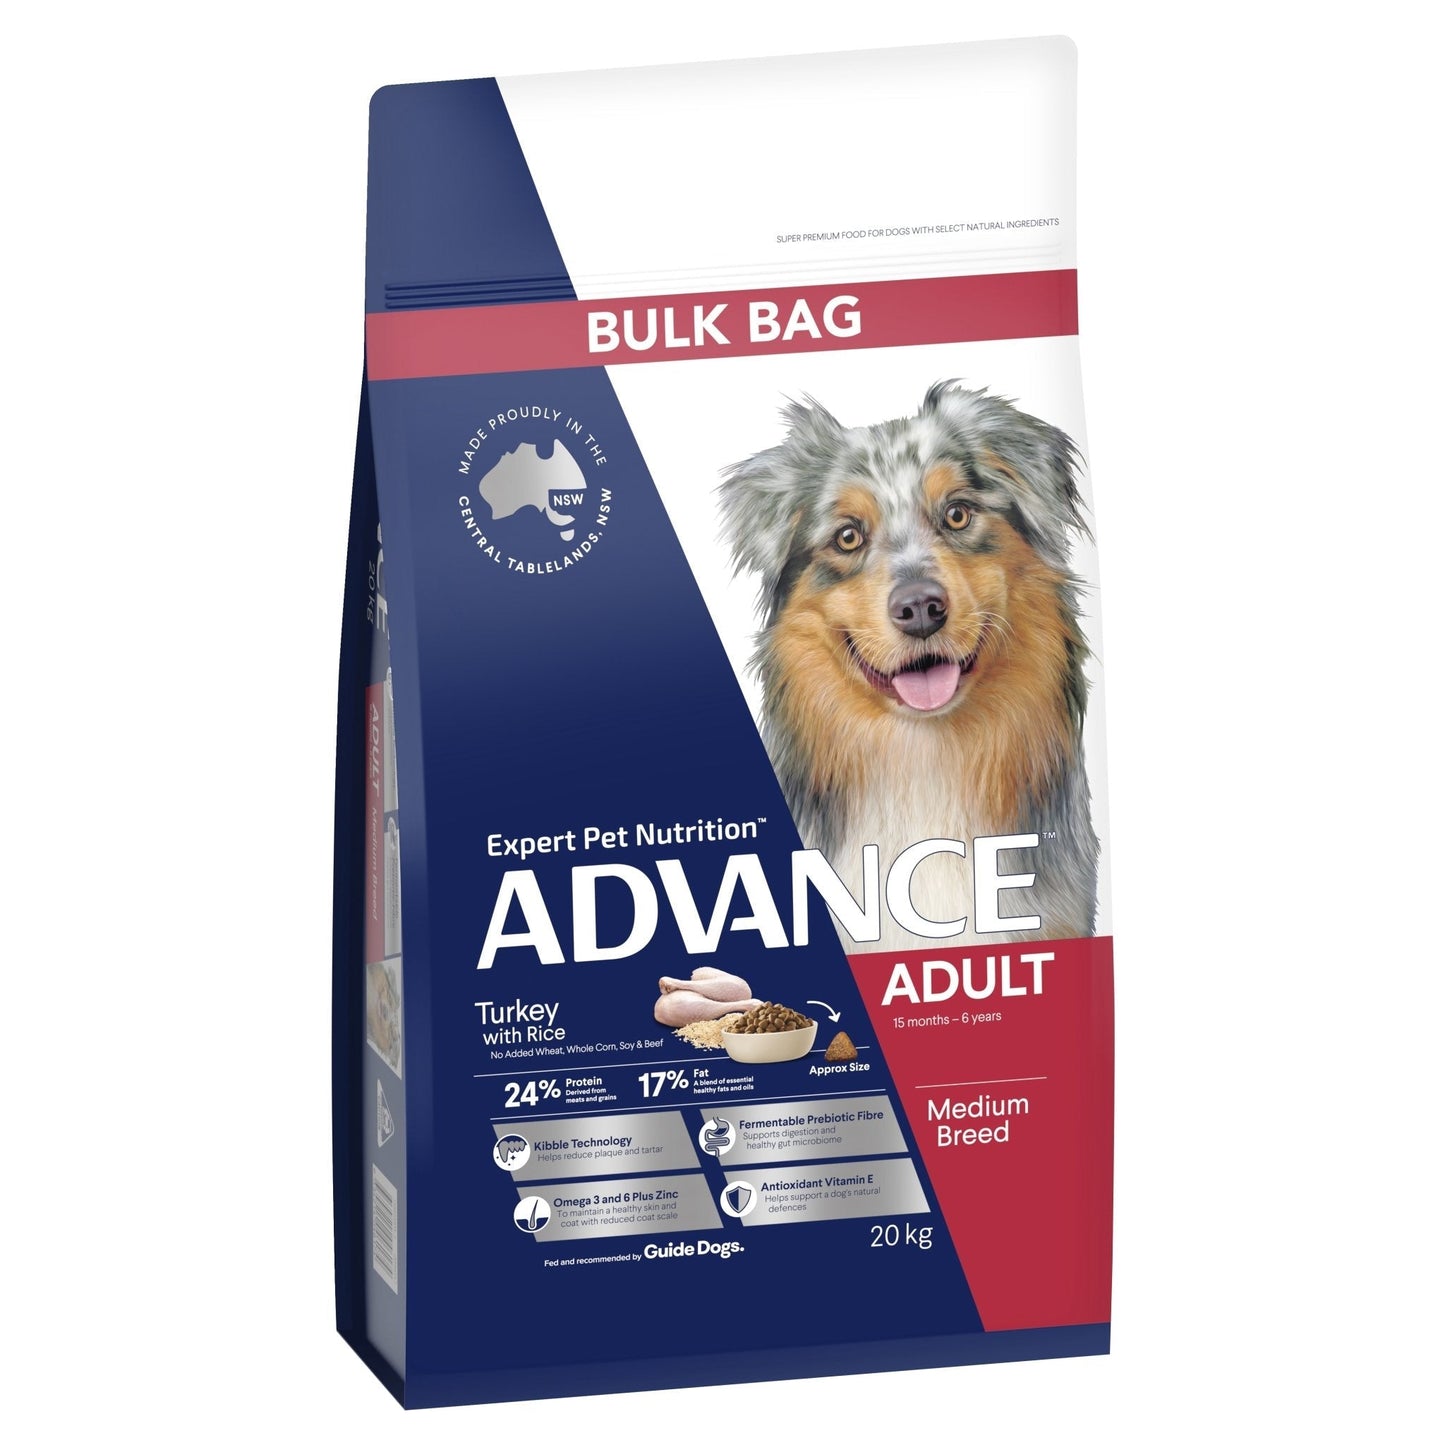 Advance Dry Dog Food Adult Turkey - Woonona Petfood & Produce